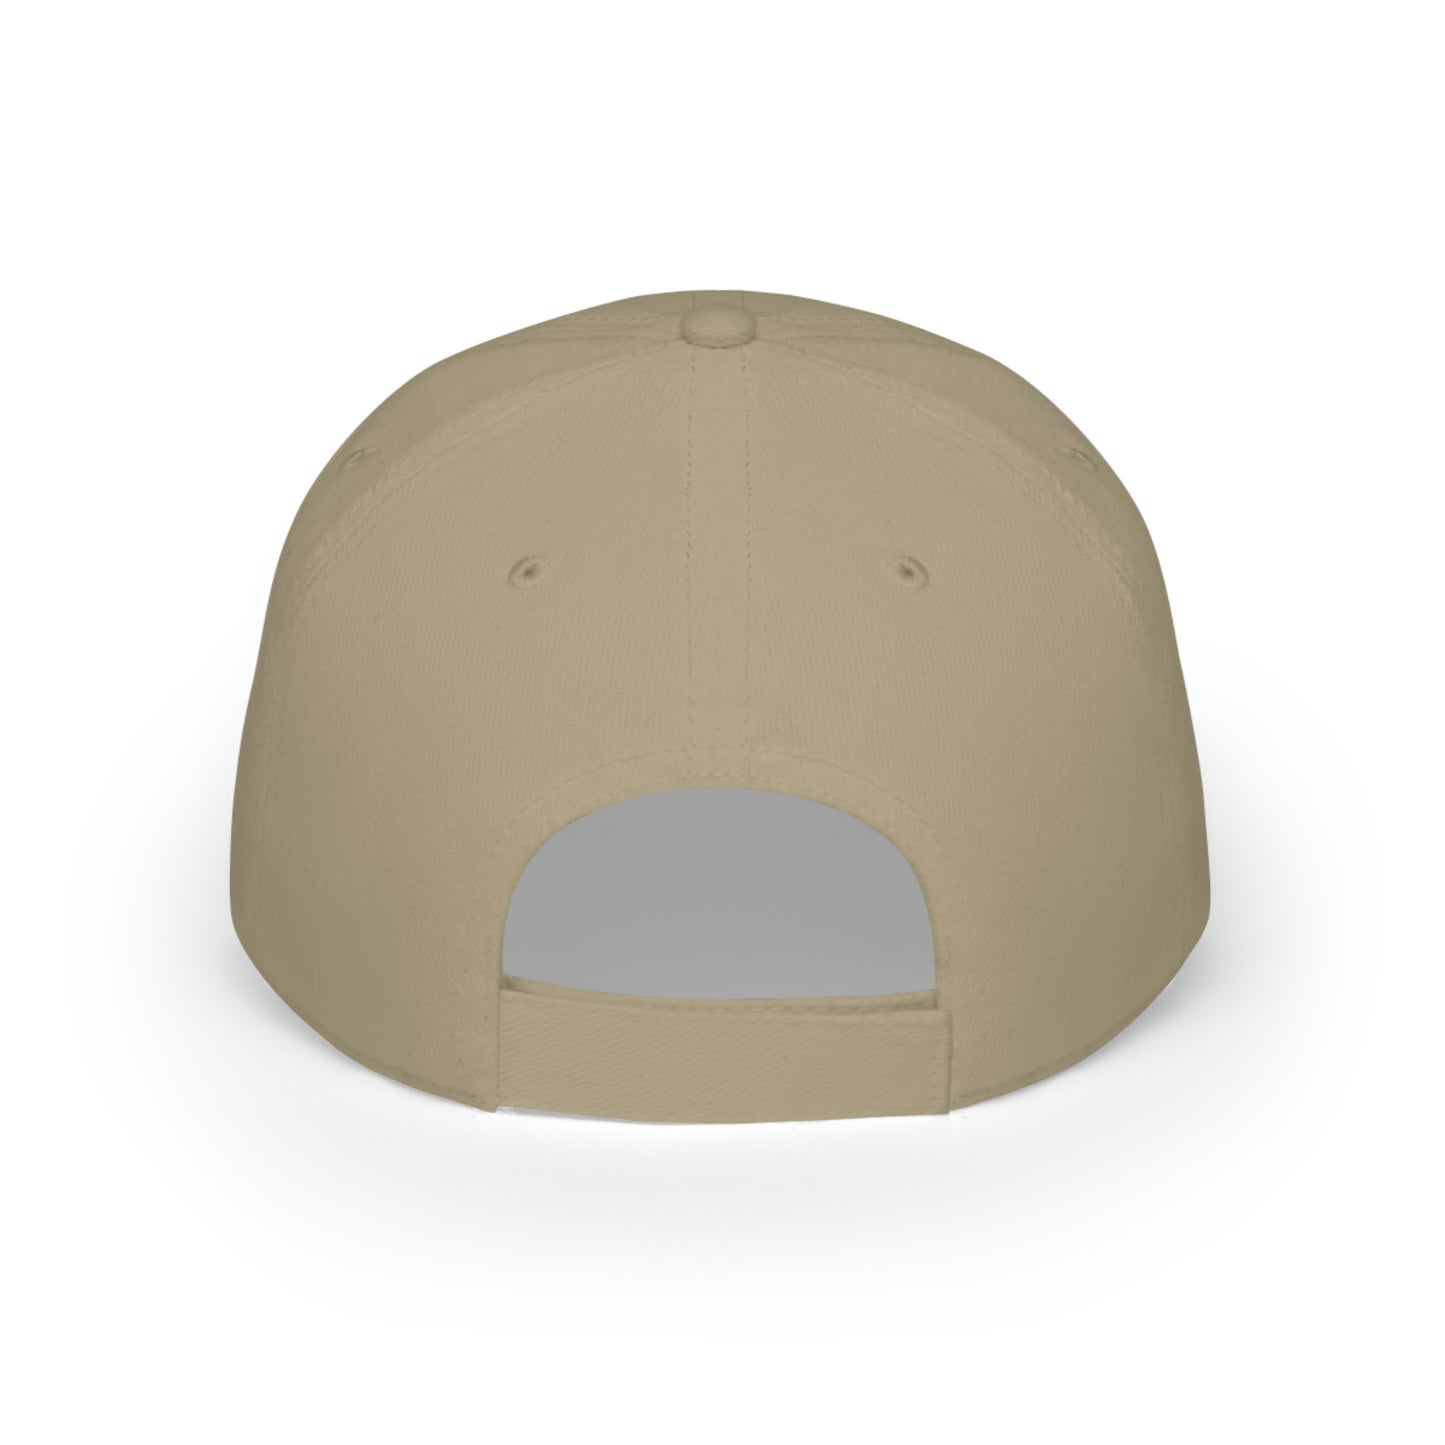 Copy of Low Profile Baseball Cap